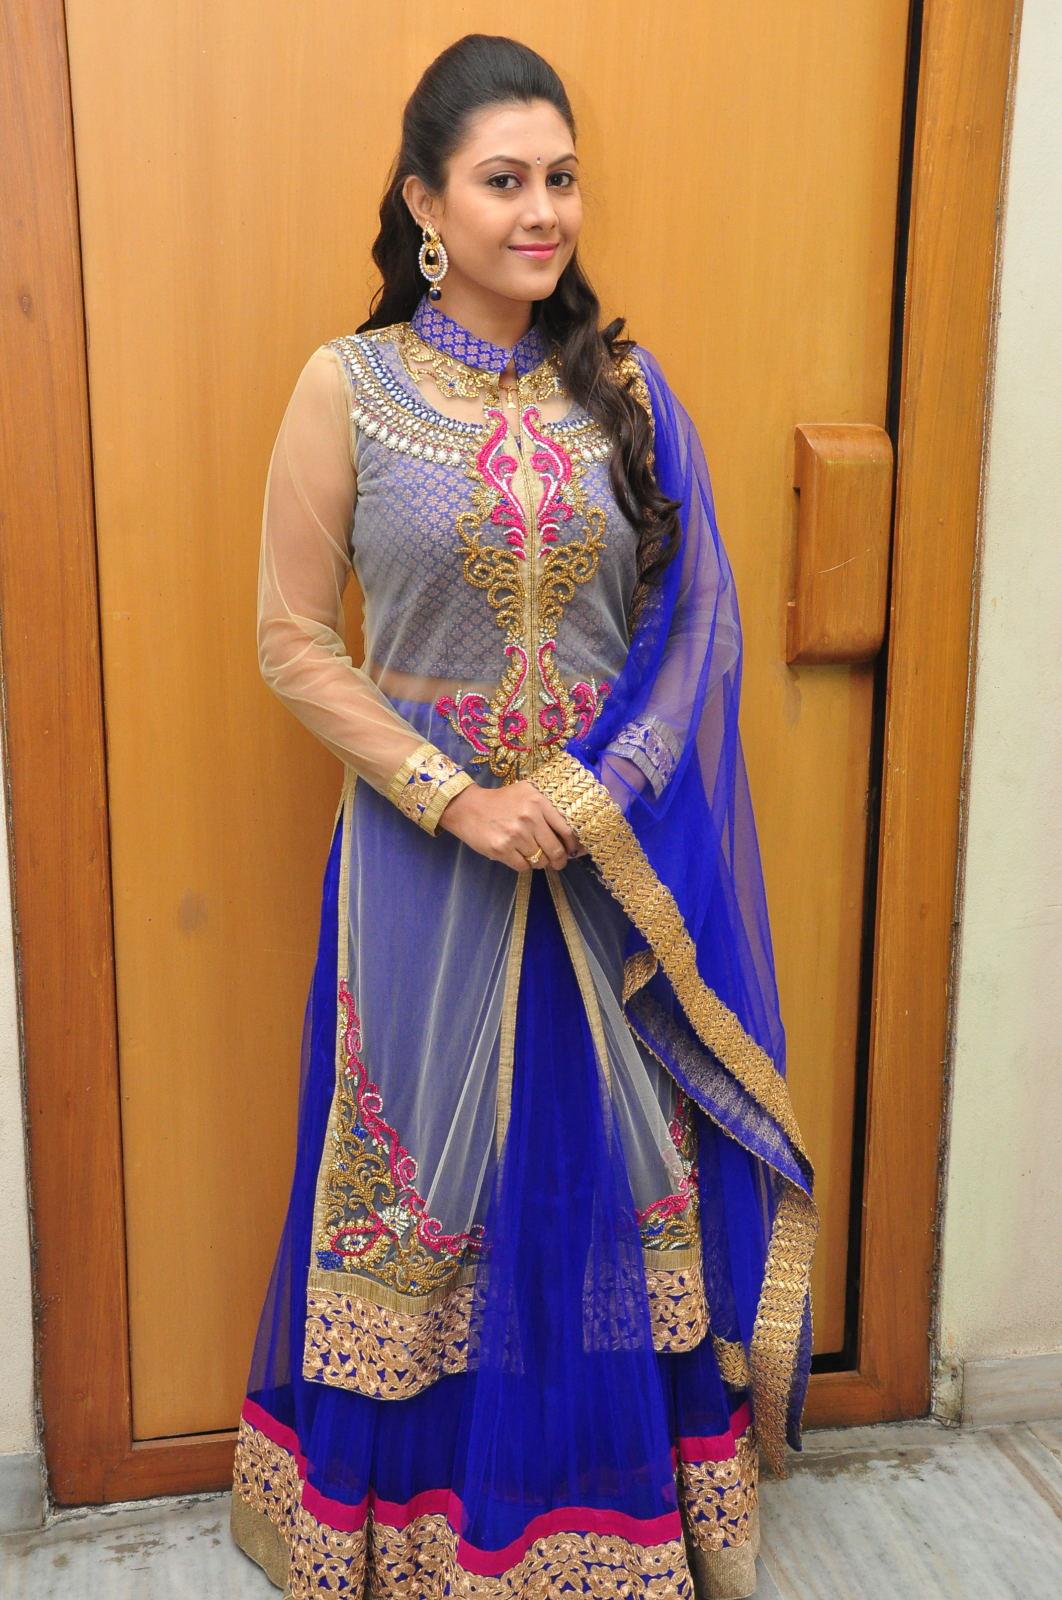 Telugu TV Actress Priyanka Photo Shoot In Blue Dress